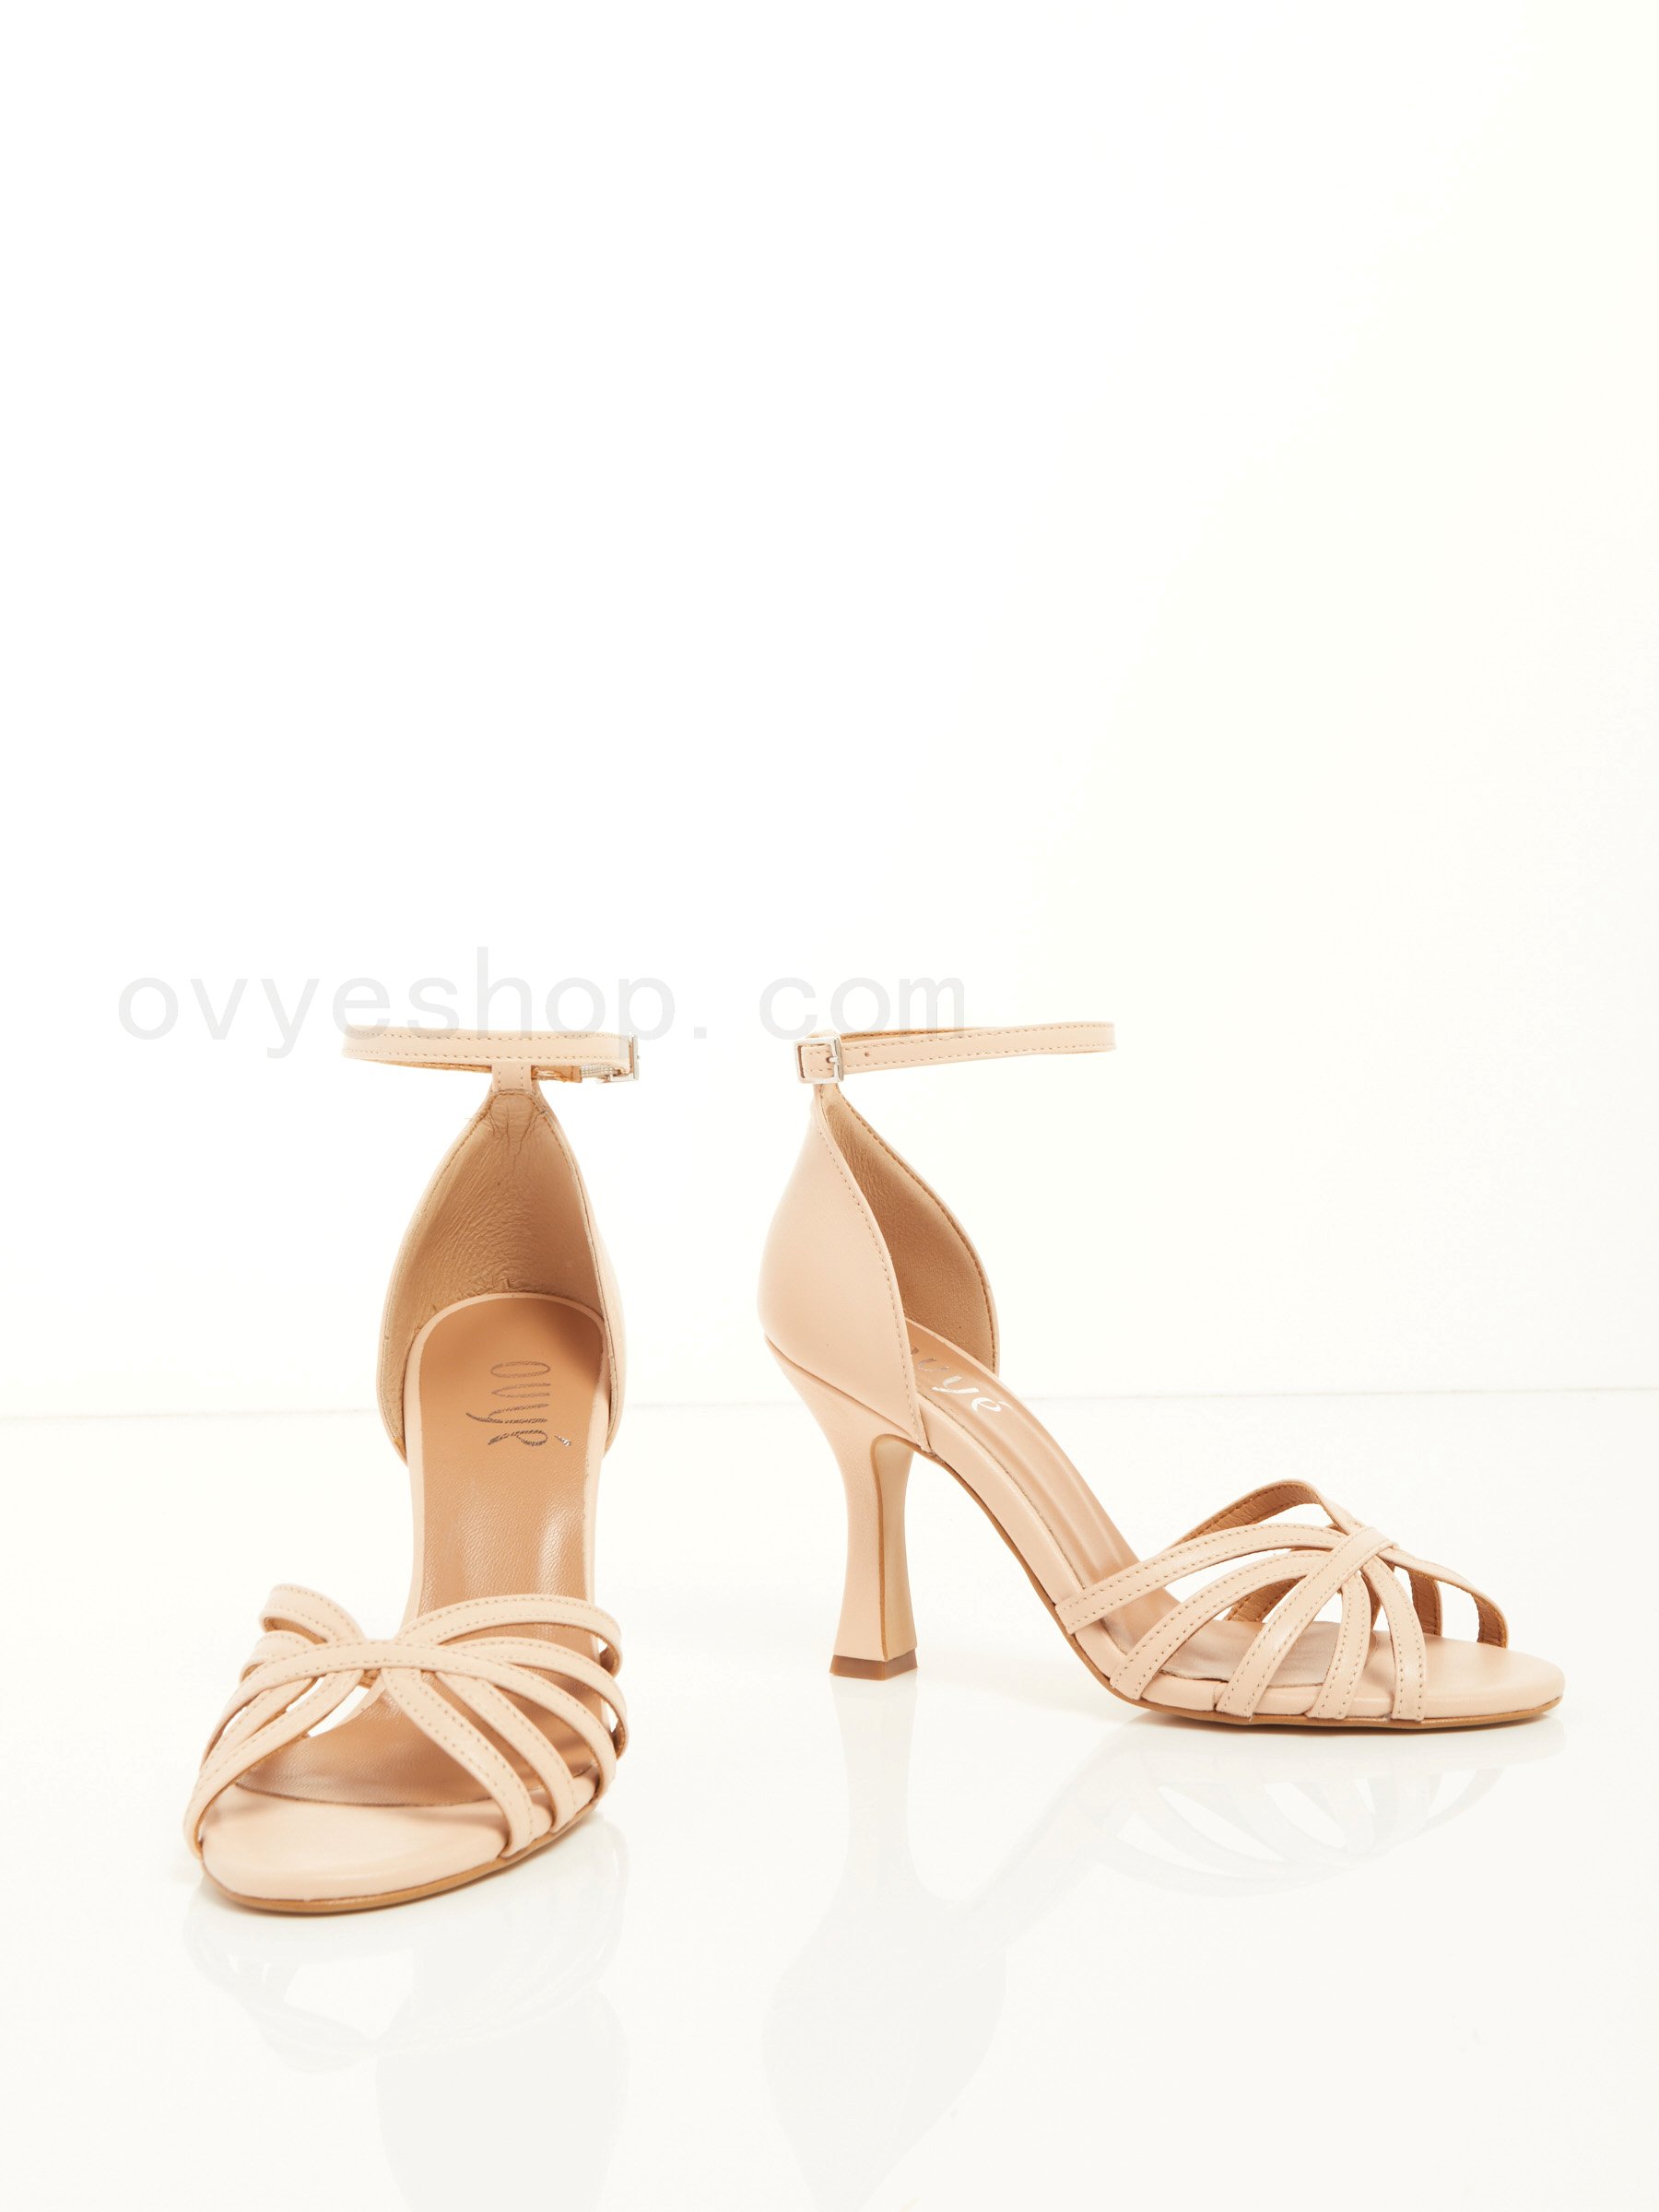 Leather Heel Sandal F0817885-0656 ovy&#233; shop online